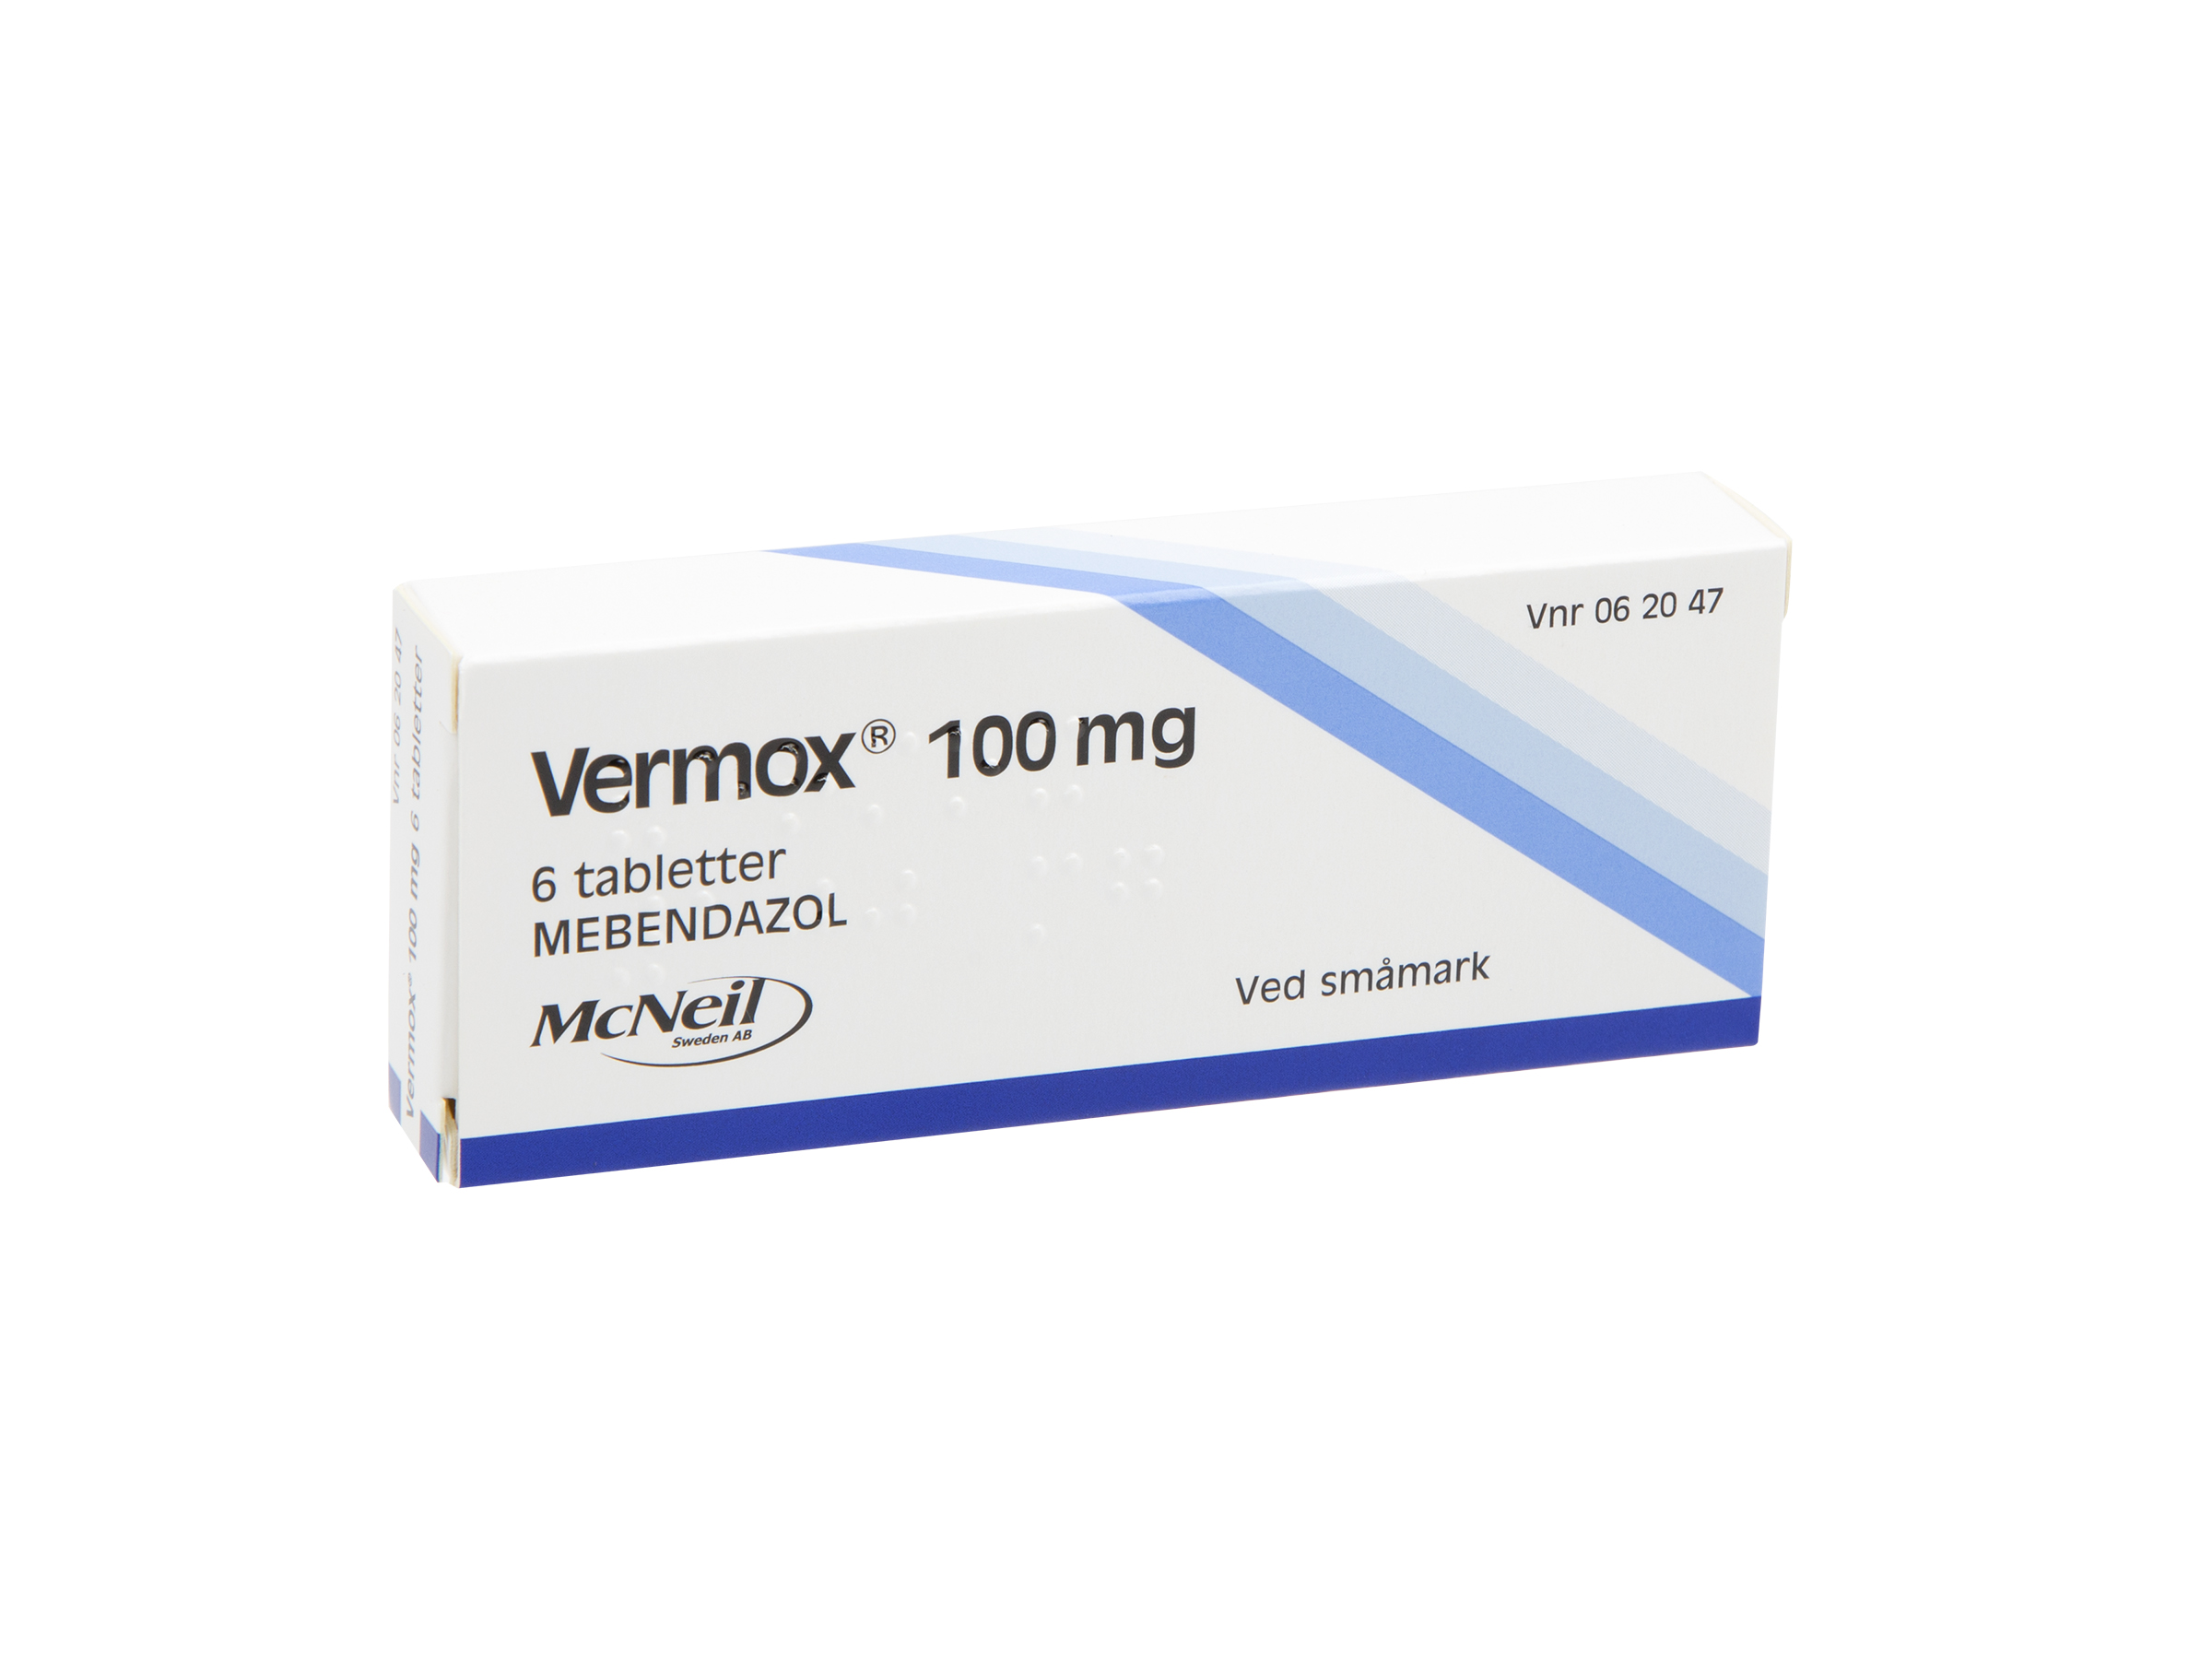 Vermox Tabletter 100mg, 6 stk.